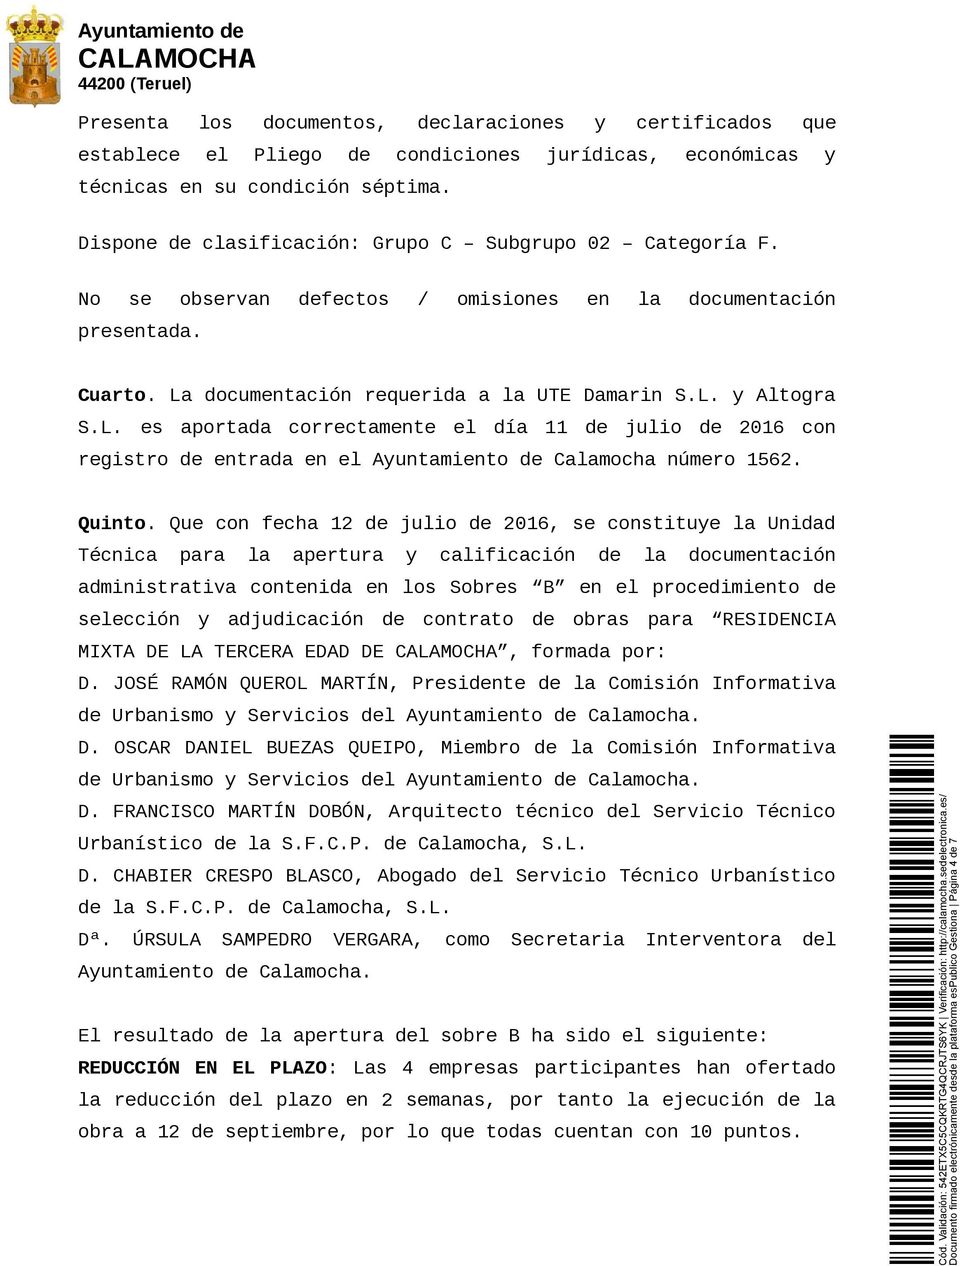 documentación requerida a UTE Damarin S.L. y Altogra S.L. es aportada correctamente el día 11 julio 2016 con registro entrada en el Ayuntamiento Camocha número 1562. Quinto.